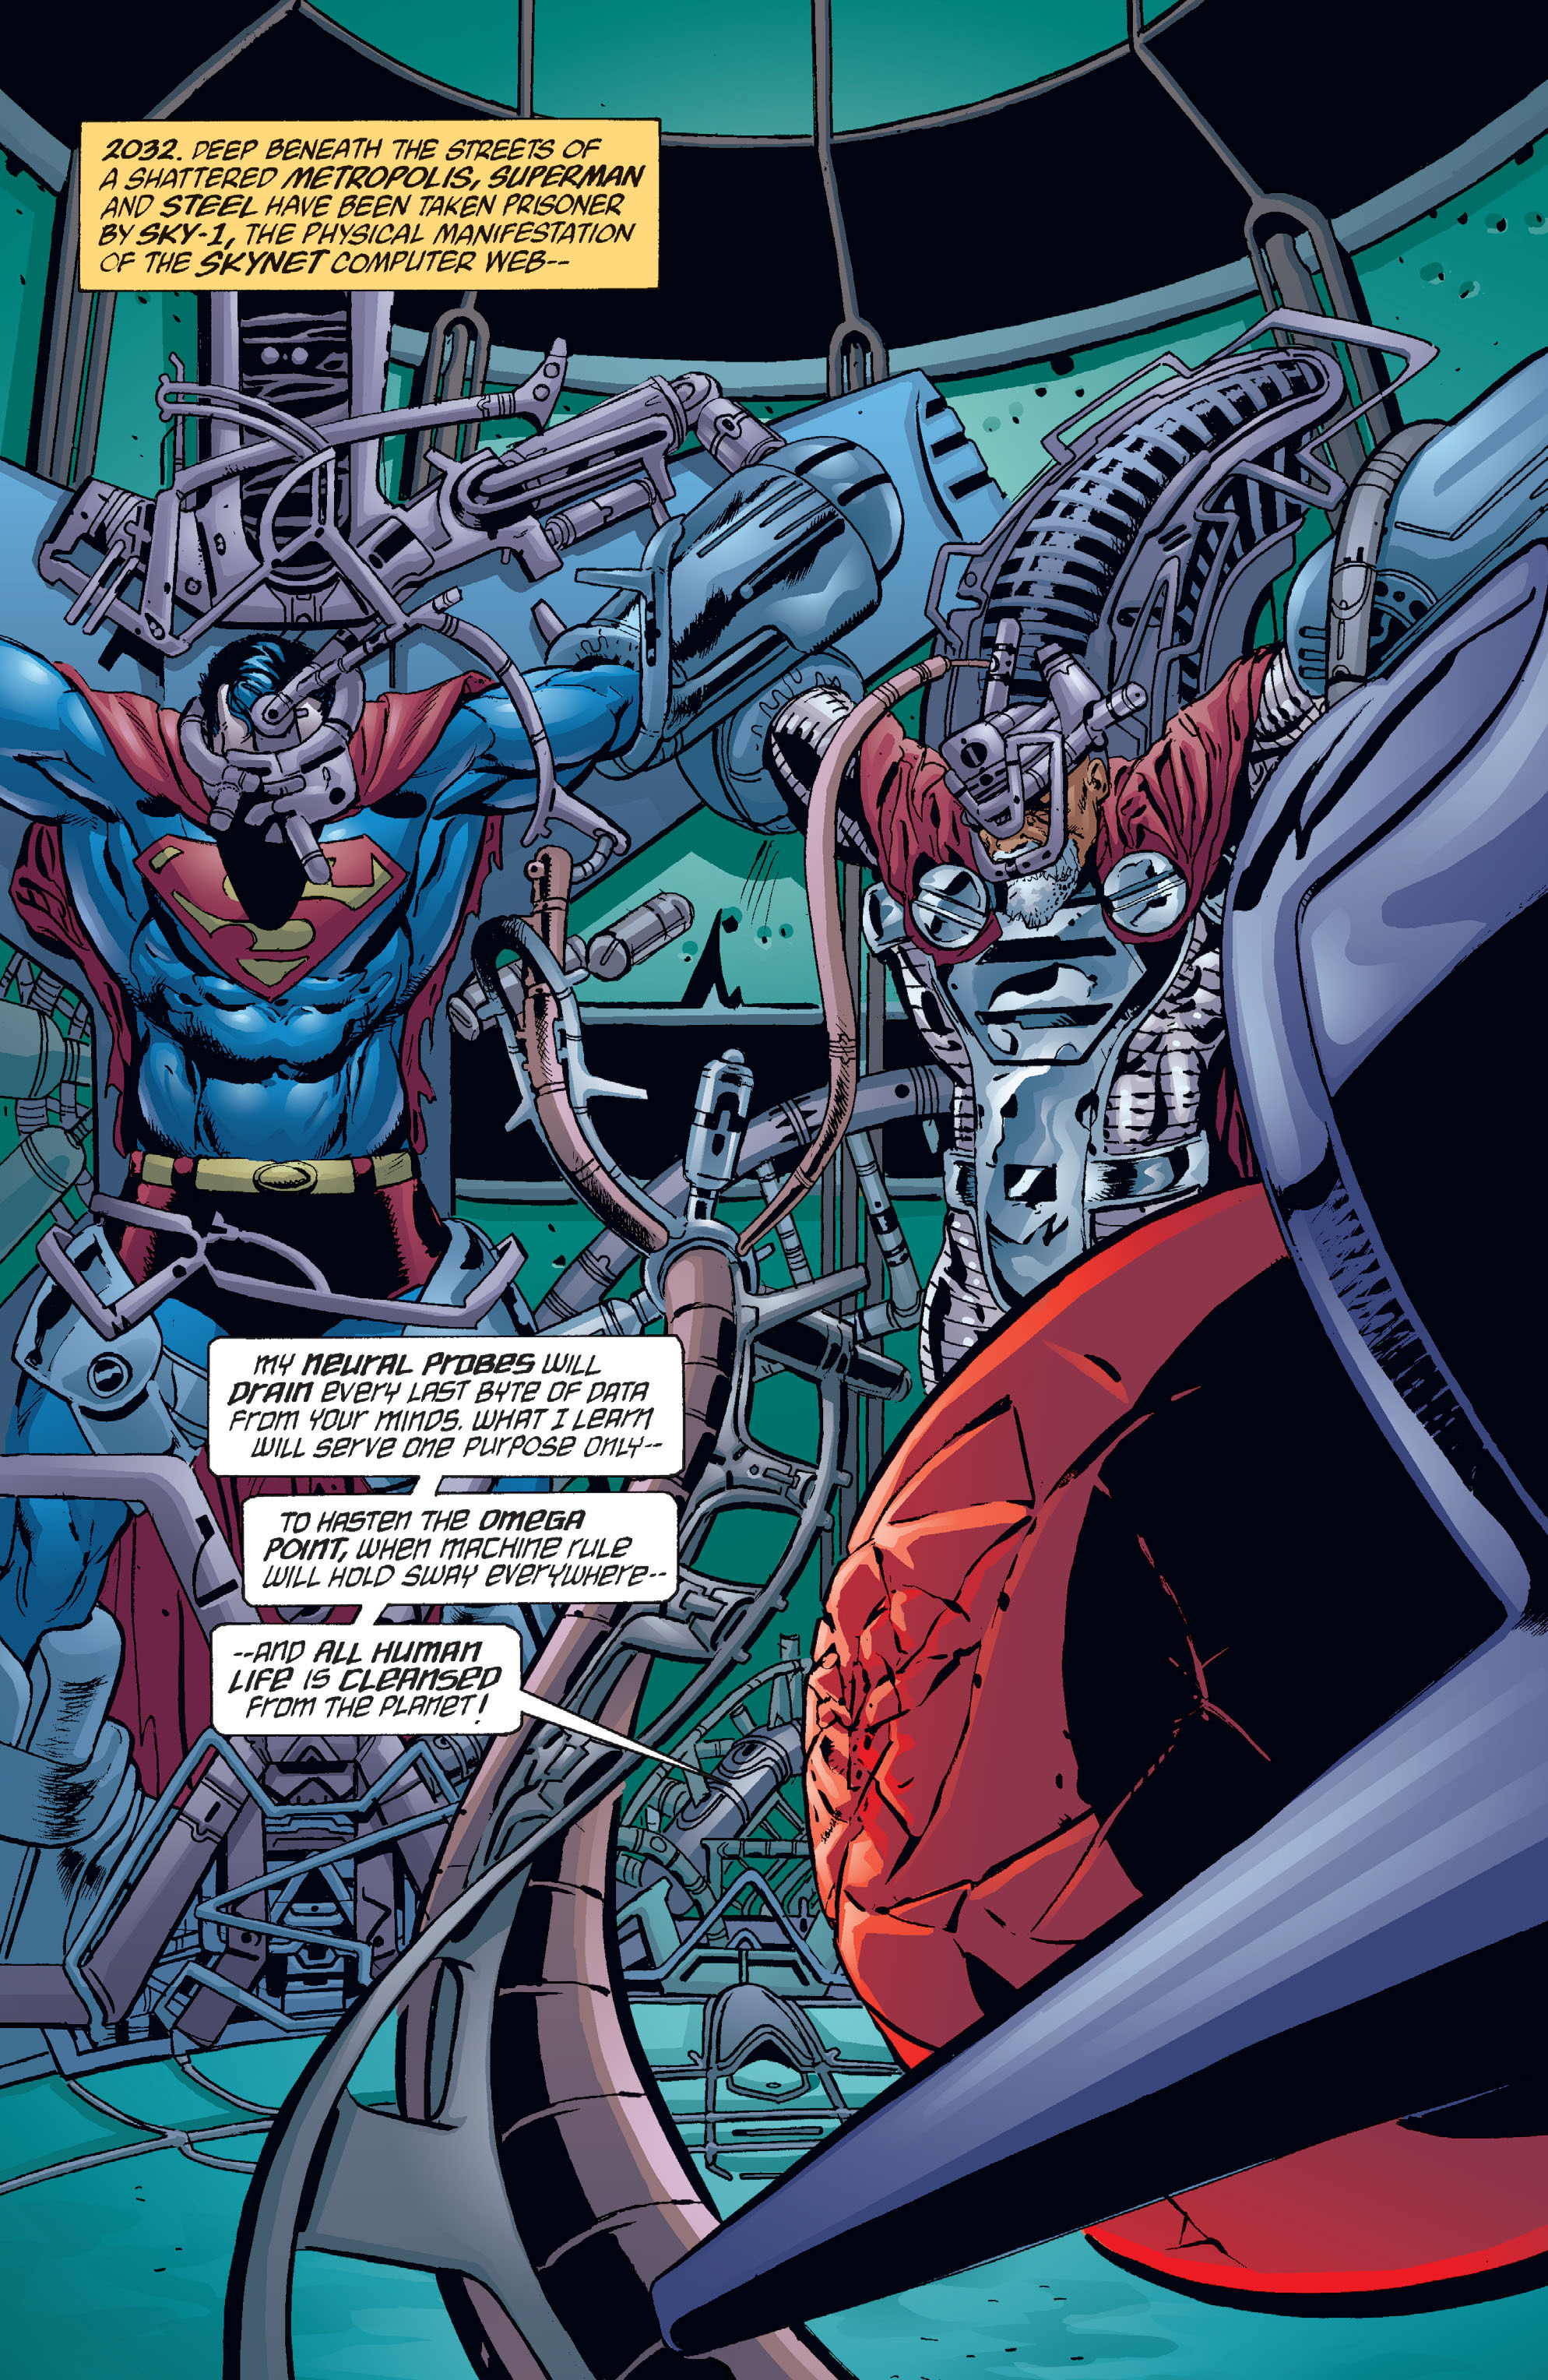 DC Comics/Dark Horse Comics: Justice League Full #1 - English 195